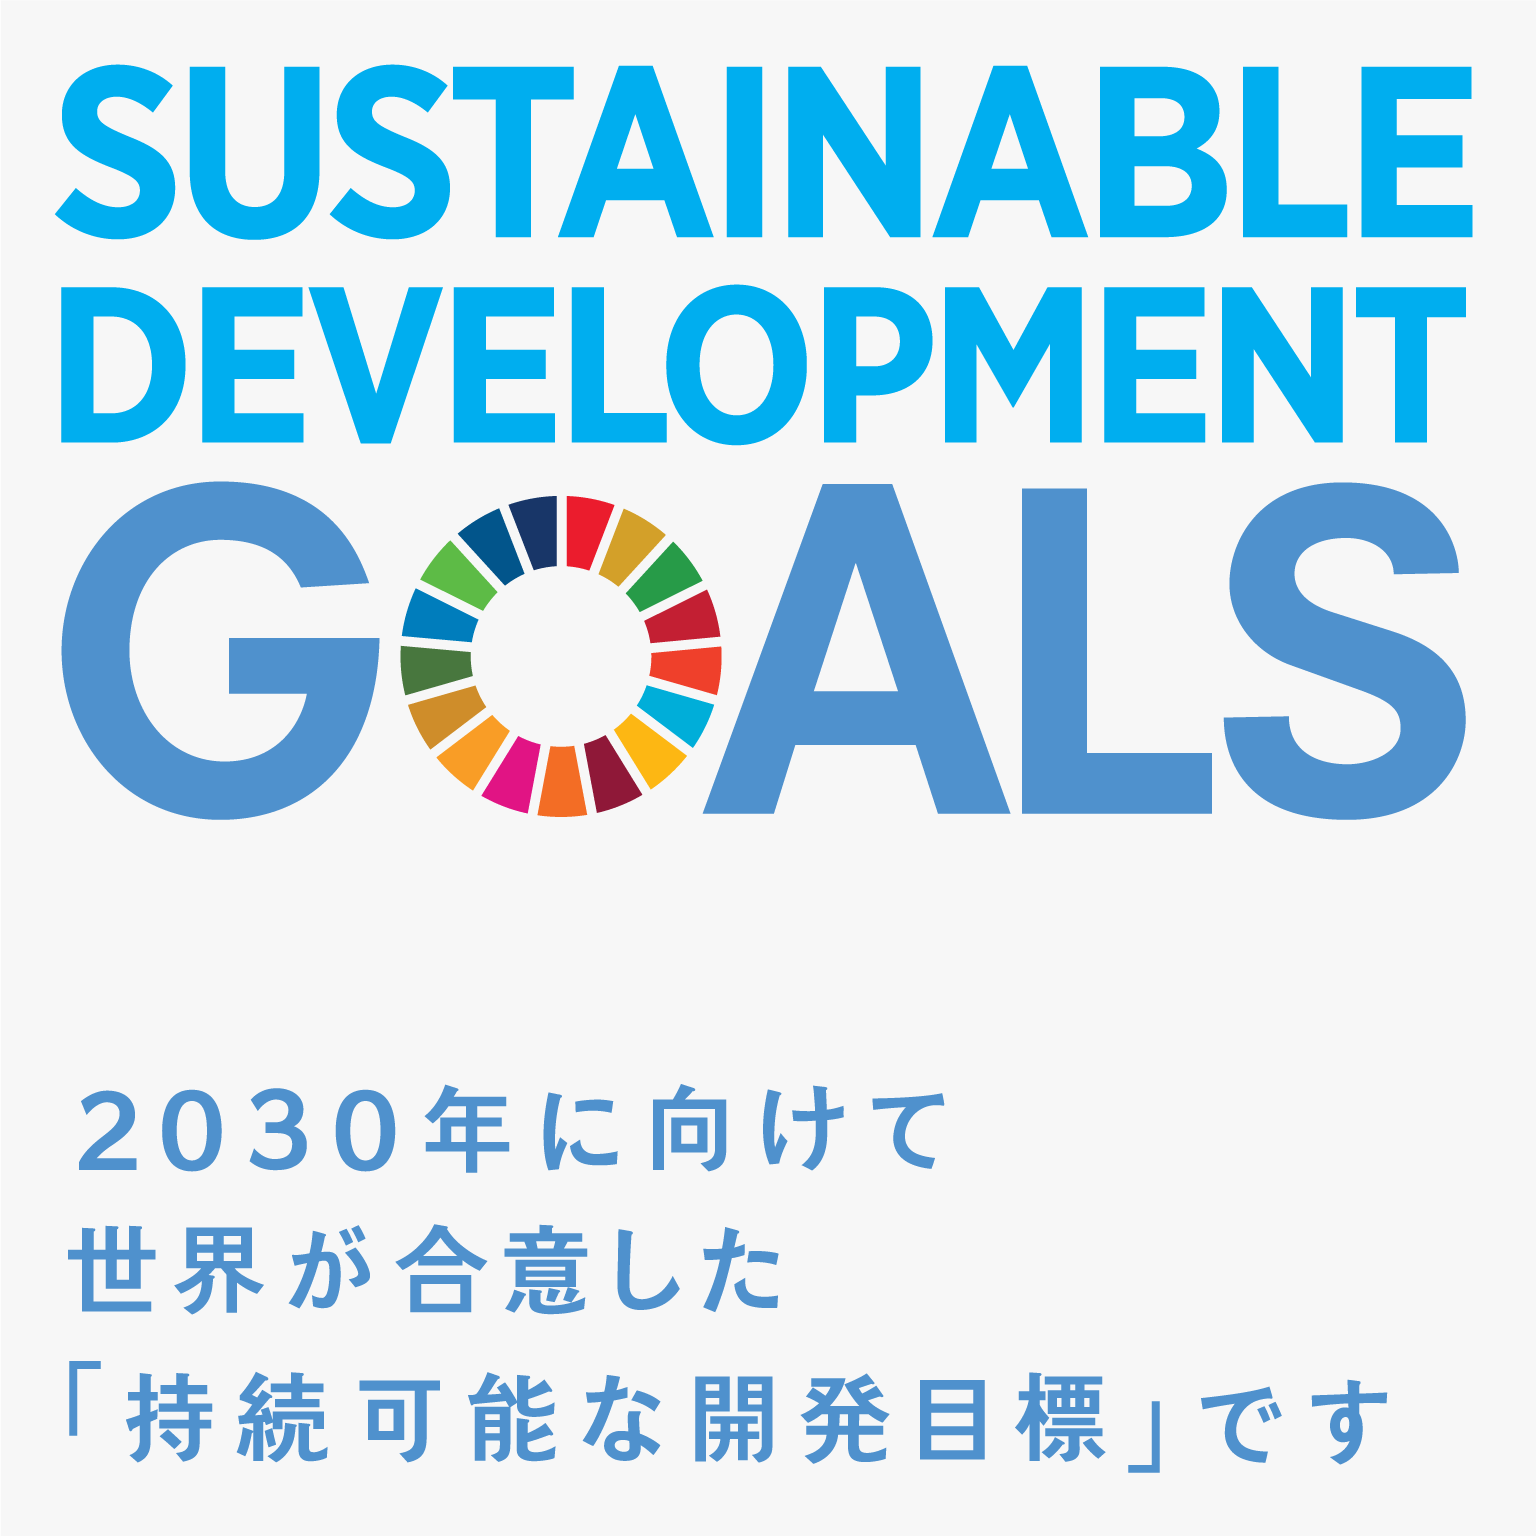 18 2030年に向けて世界が合意した「持続可能な開発目標」です